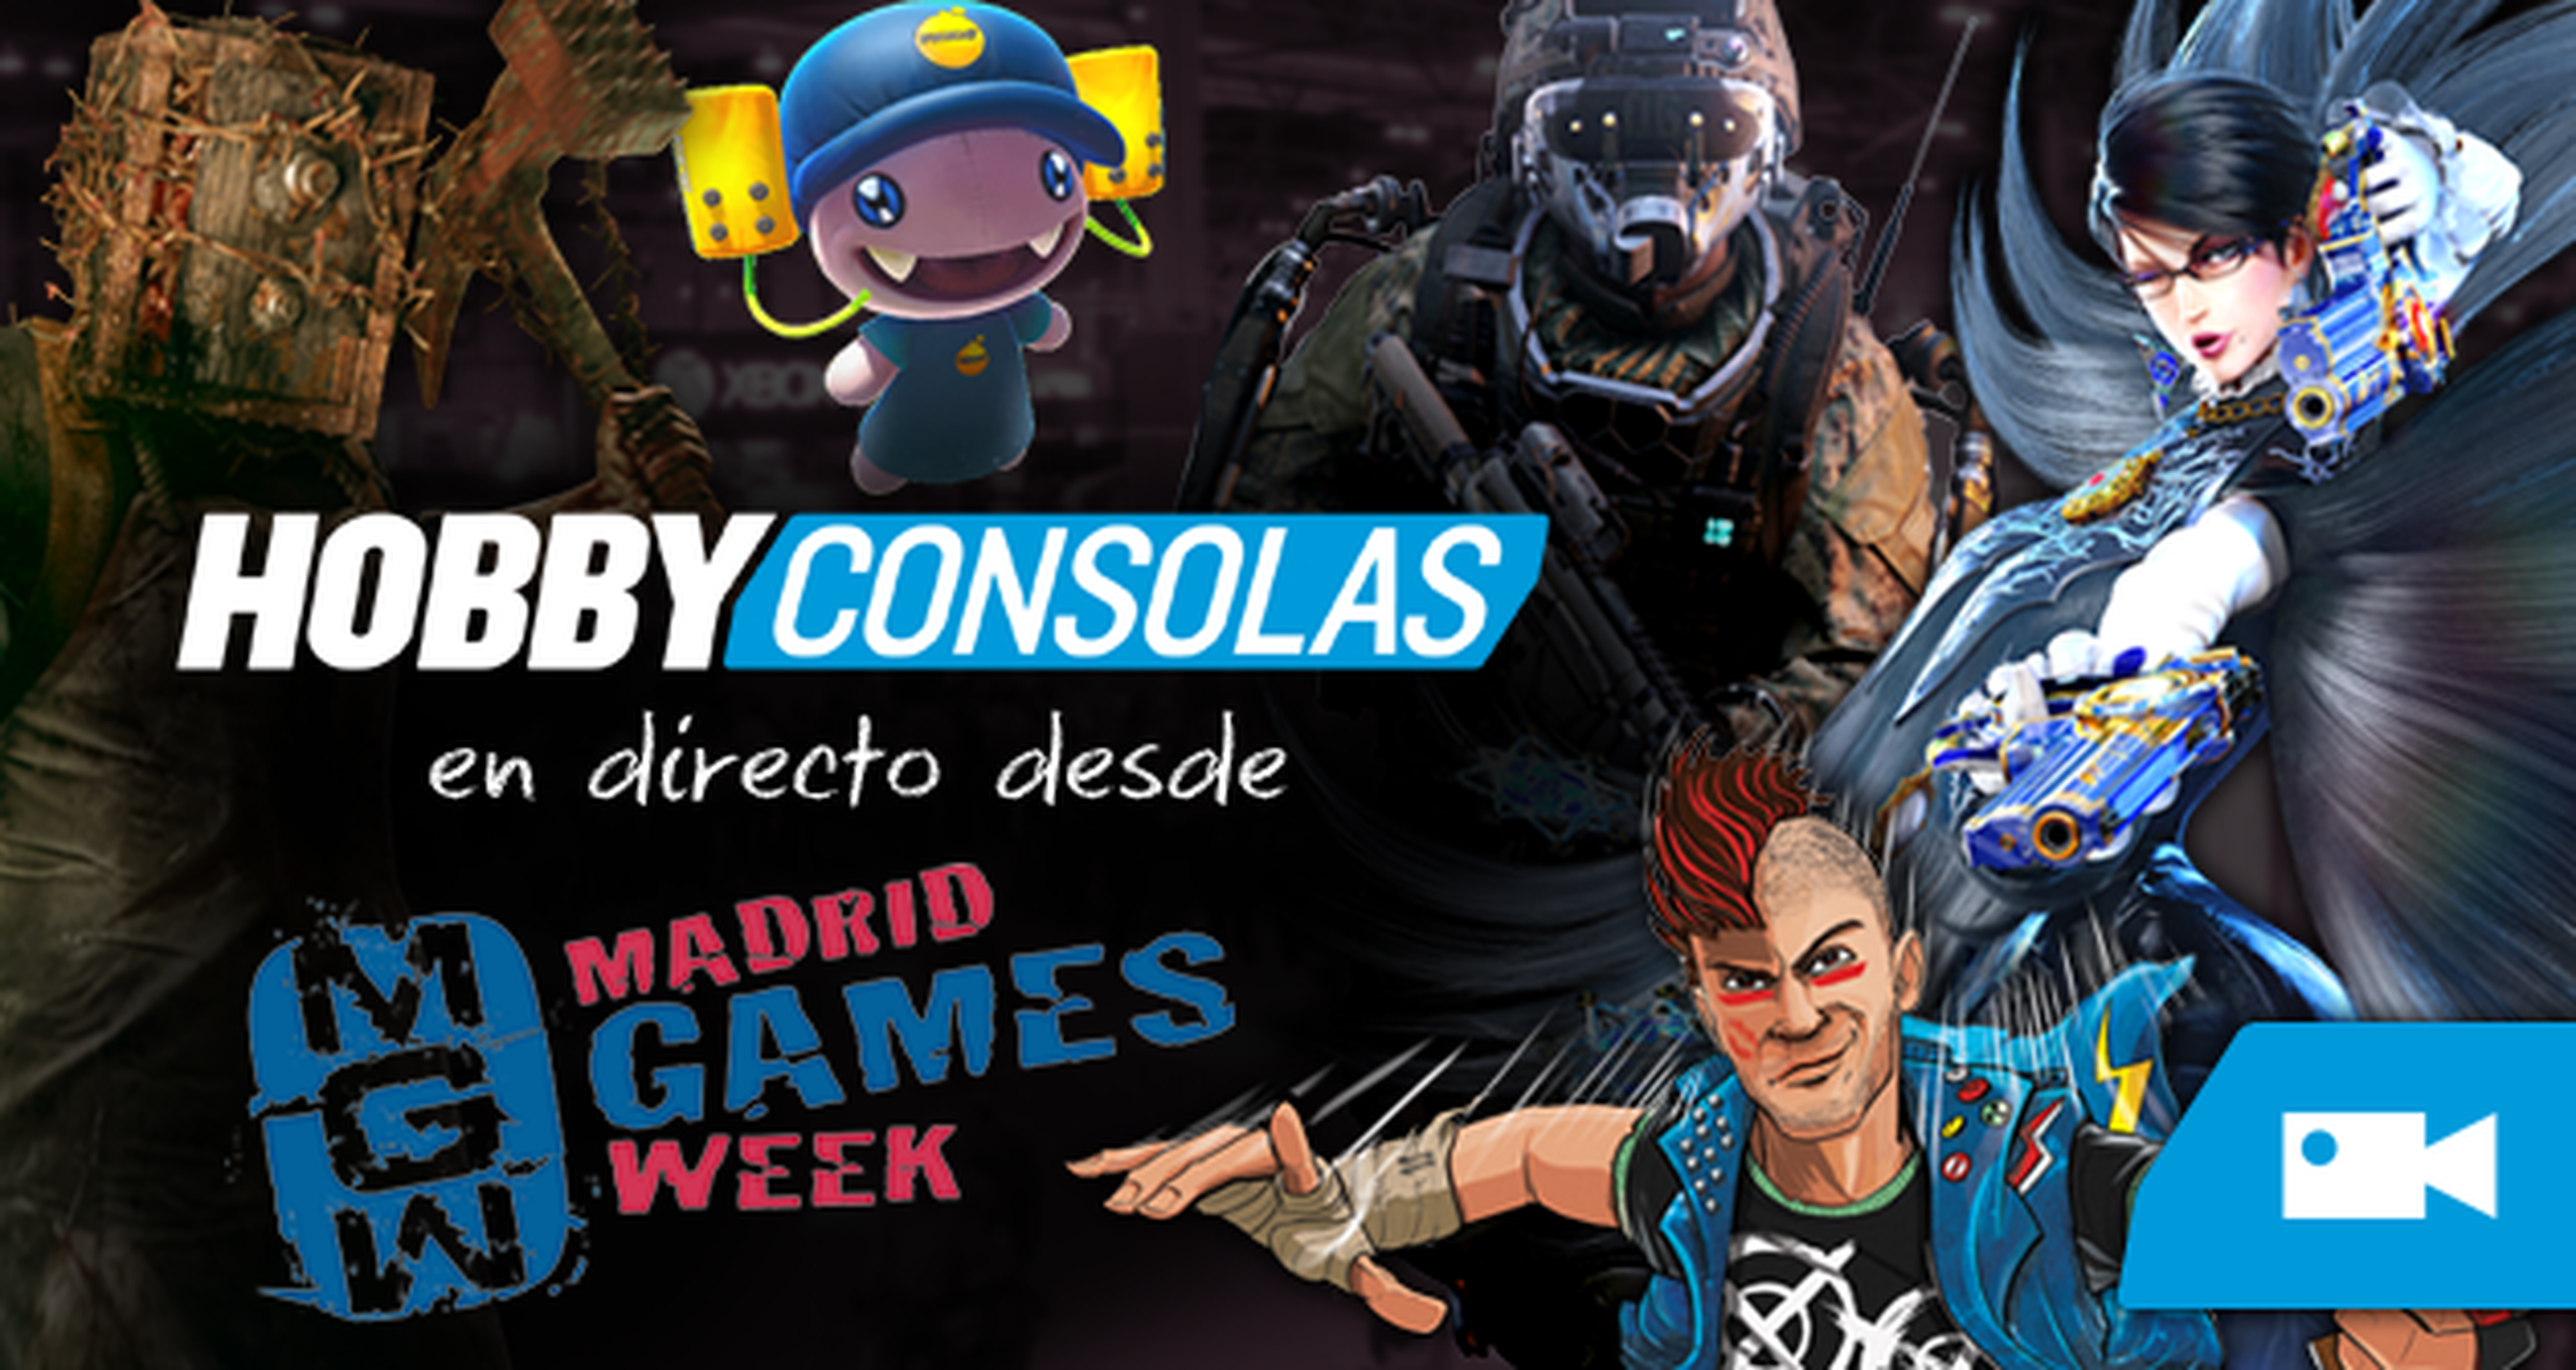 Directo desde Madrid Games Week